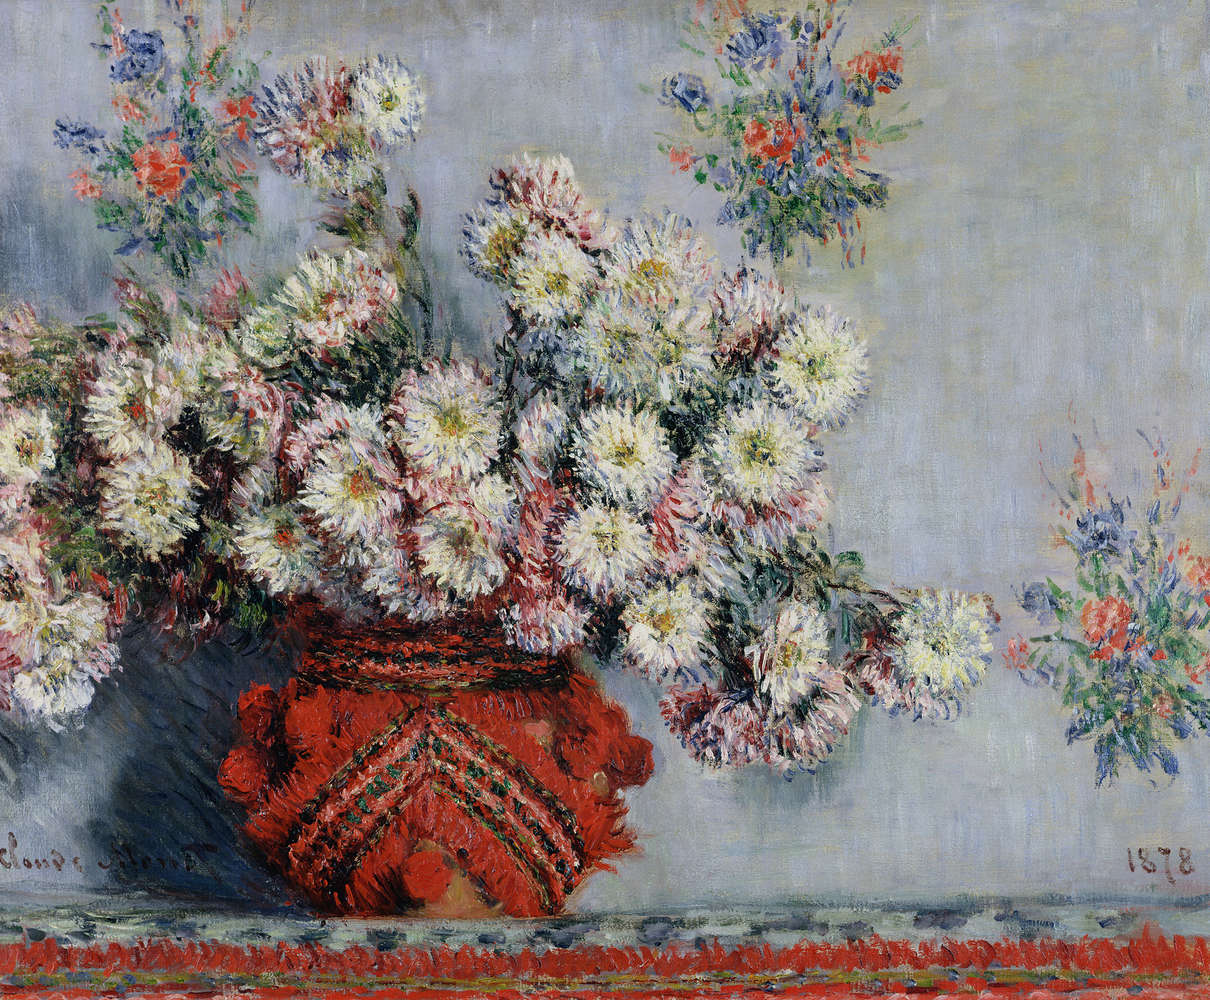             Muurschildering "Chrysanten" van Claude Monet
        